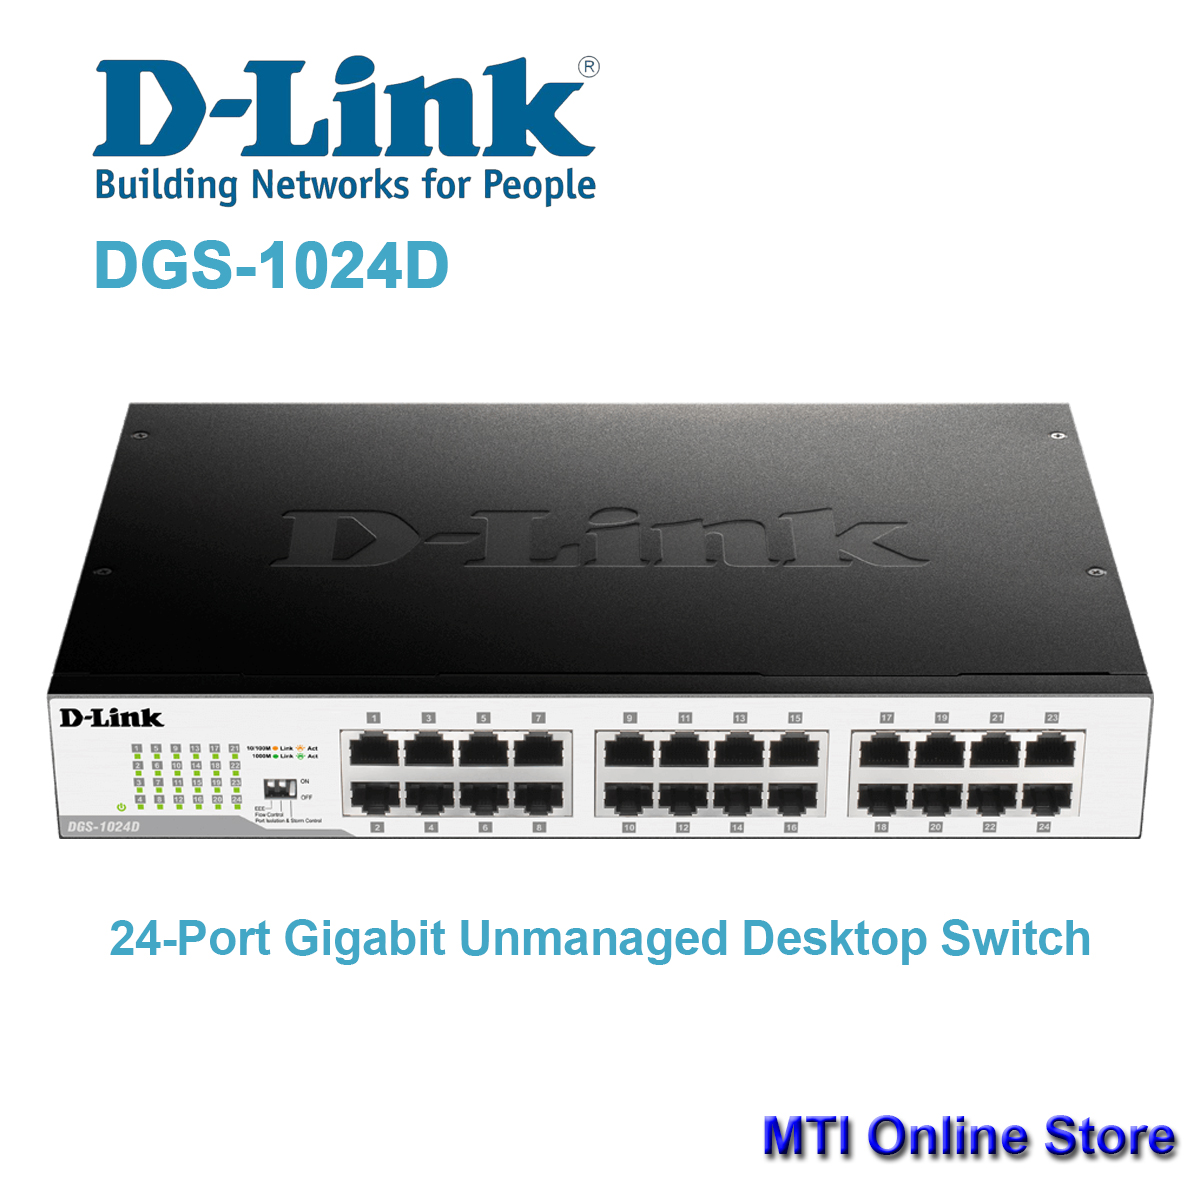 DGS-1024D 24-Port Gigabit Unmanaged Desktop Switch